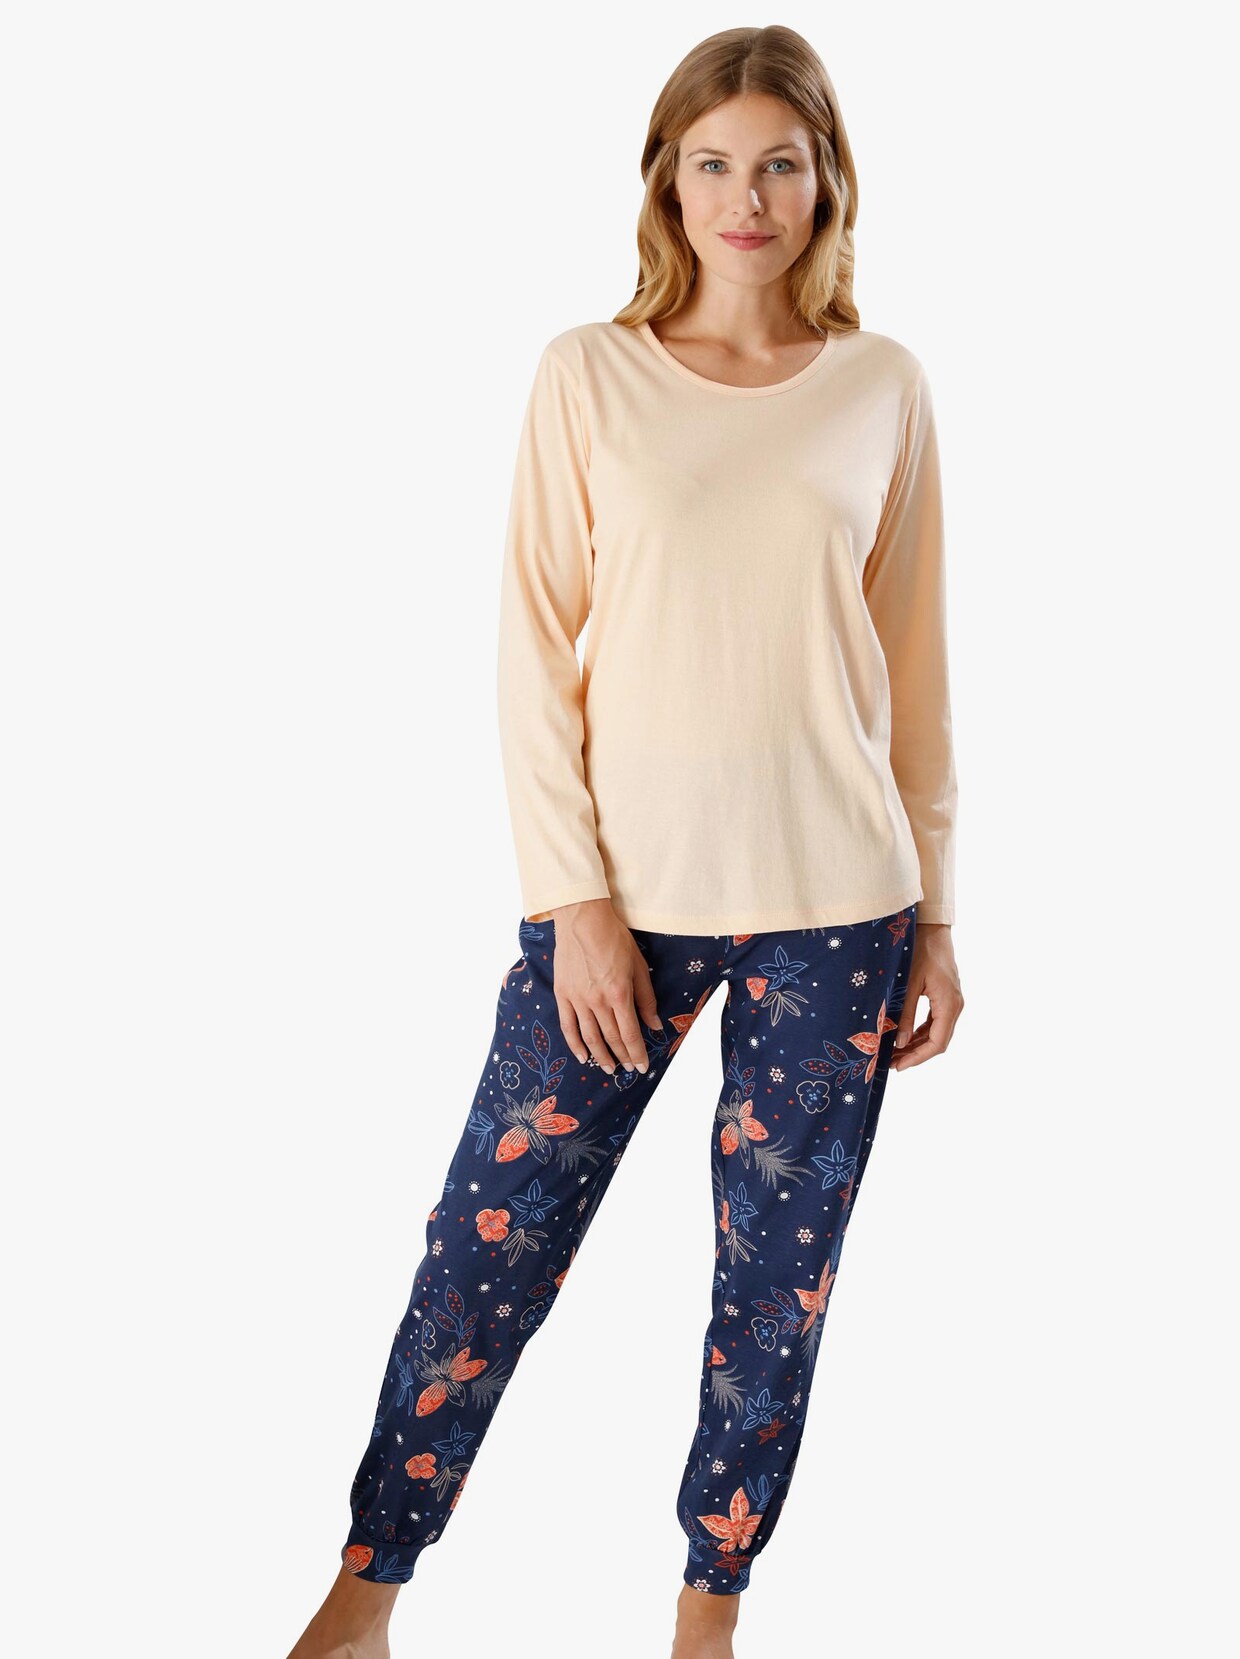 Pyjamas-Byxor - nattblå, tryckt